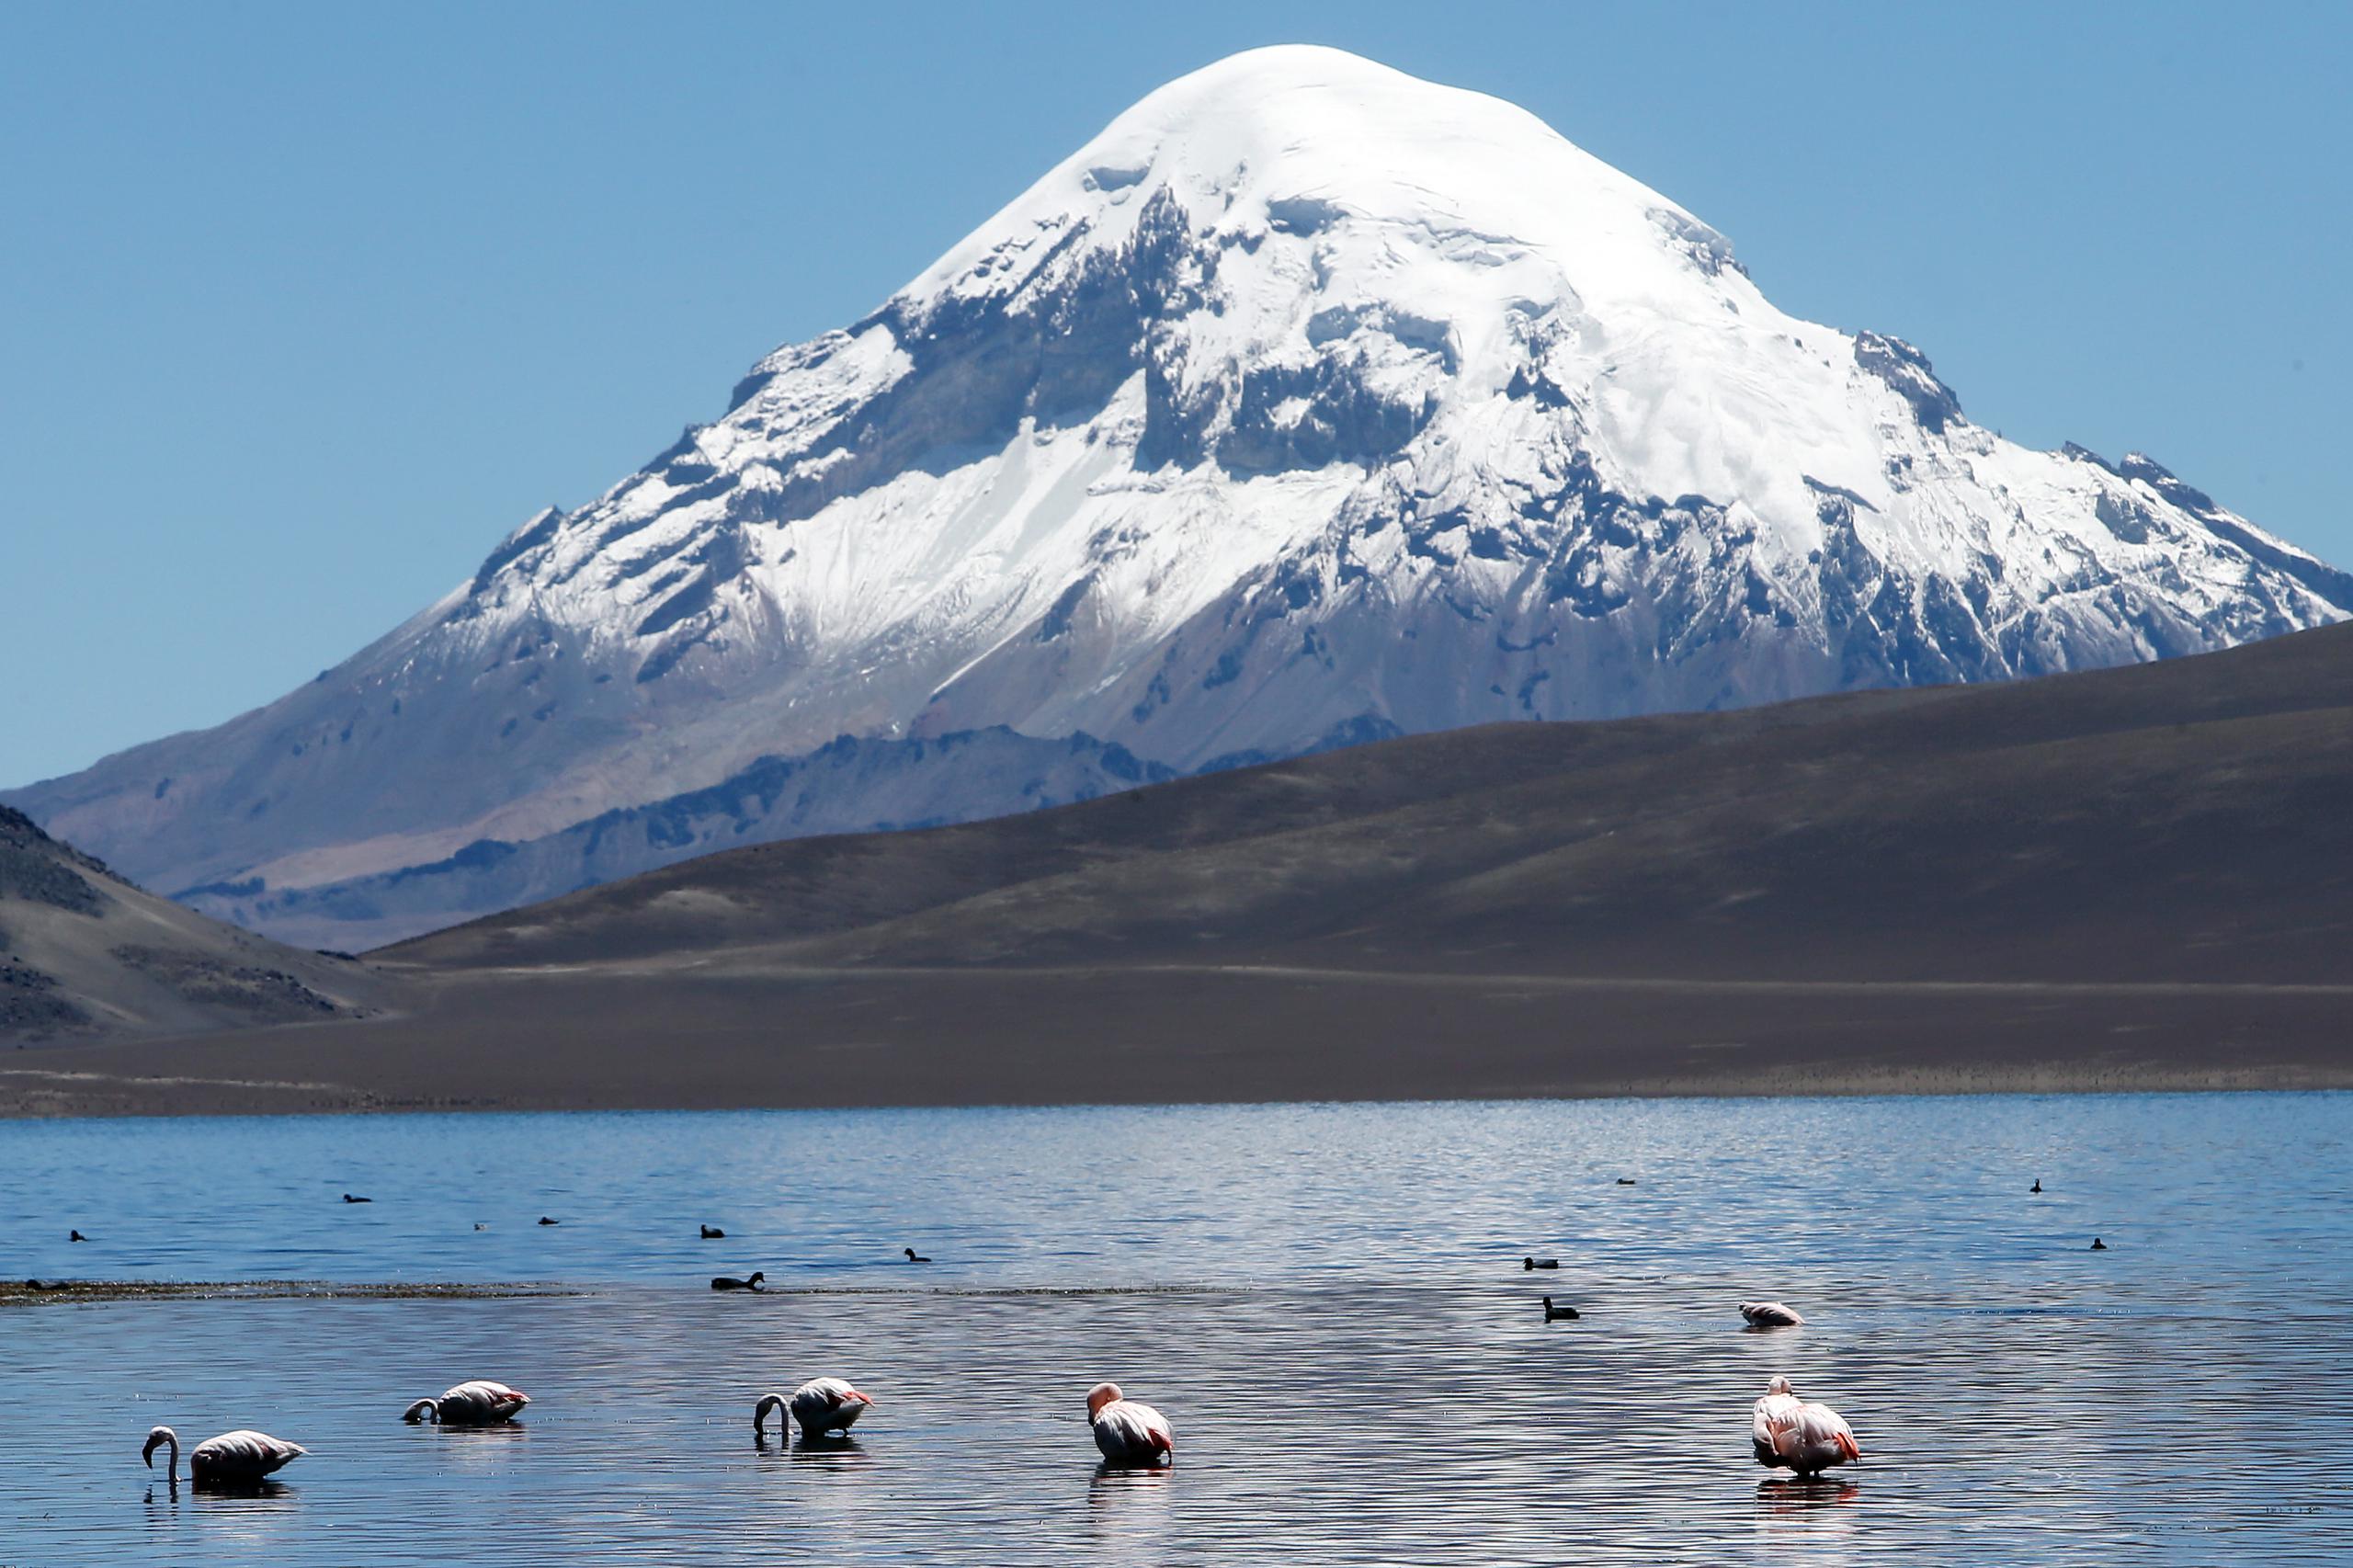 El lago Chungará, a 4,500 metros de altitud, en la región de Arica, localidad distante a 2,000 km. al norte de Santiago.